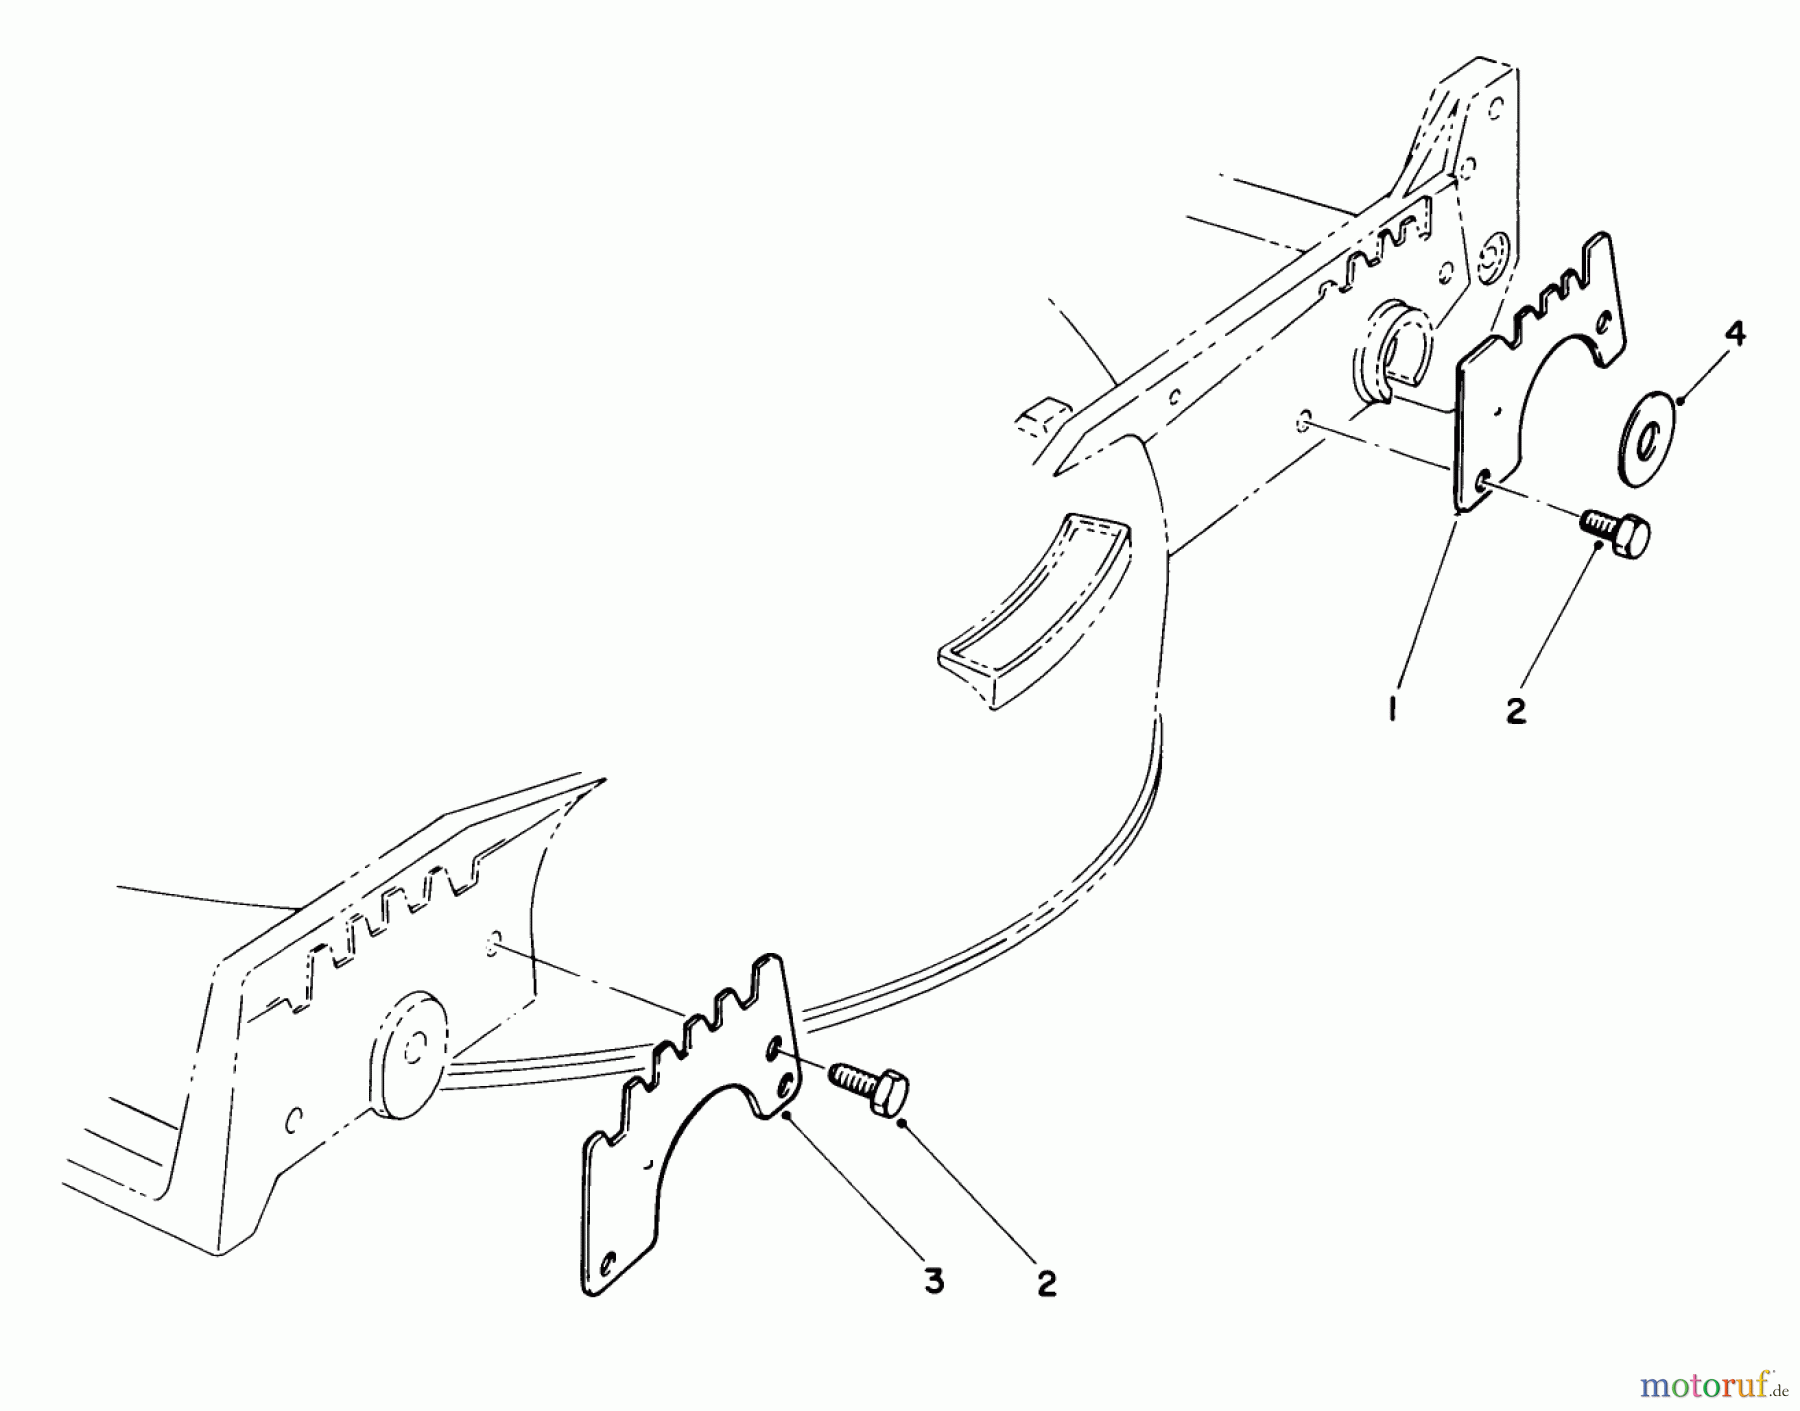  Toro Neu Mowers, Walk-Behind Seite 1 20526C - Toro Lawnmower, 1987 (7000001-7999999) WEAR PLATE KIT NO. 49-4080 (OPTIONAL)